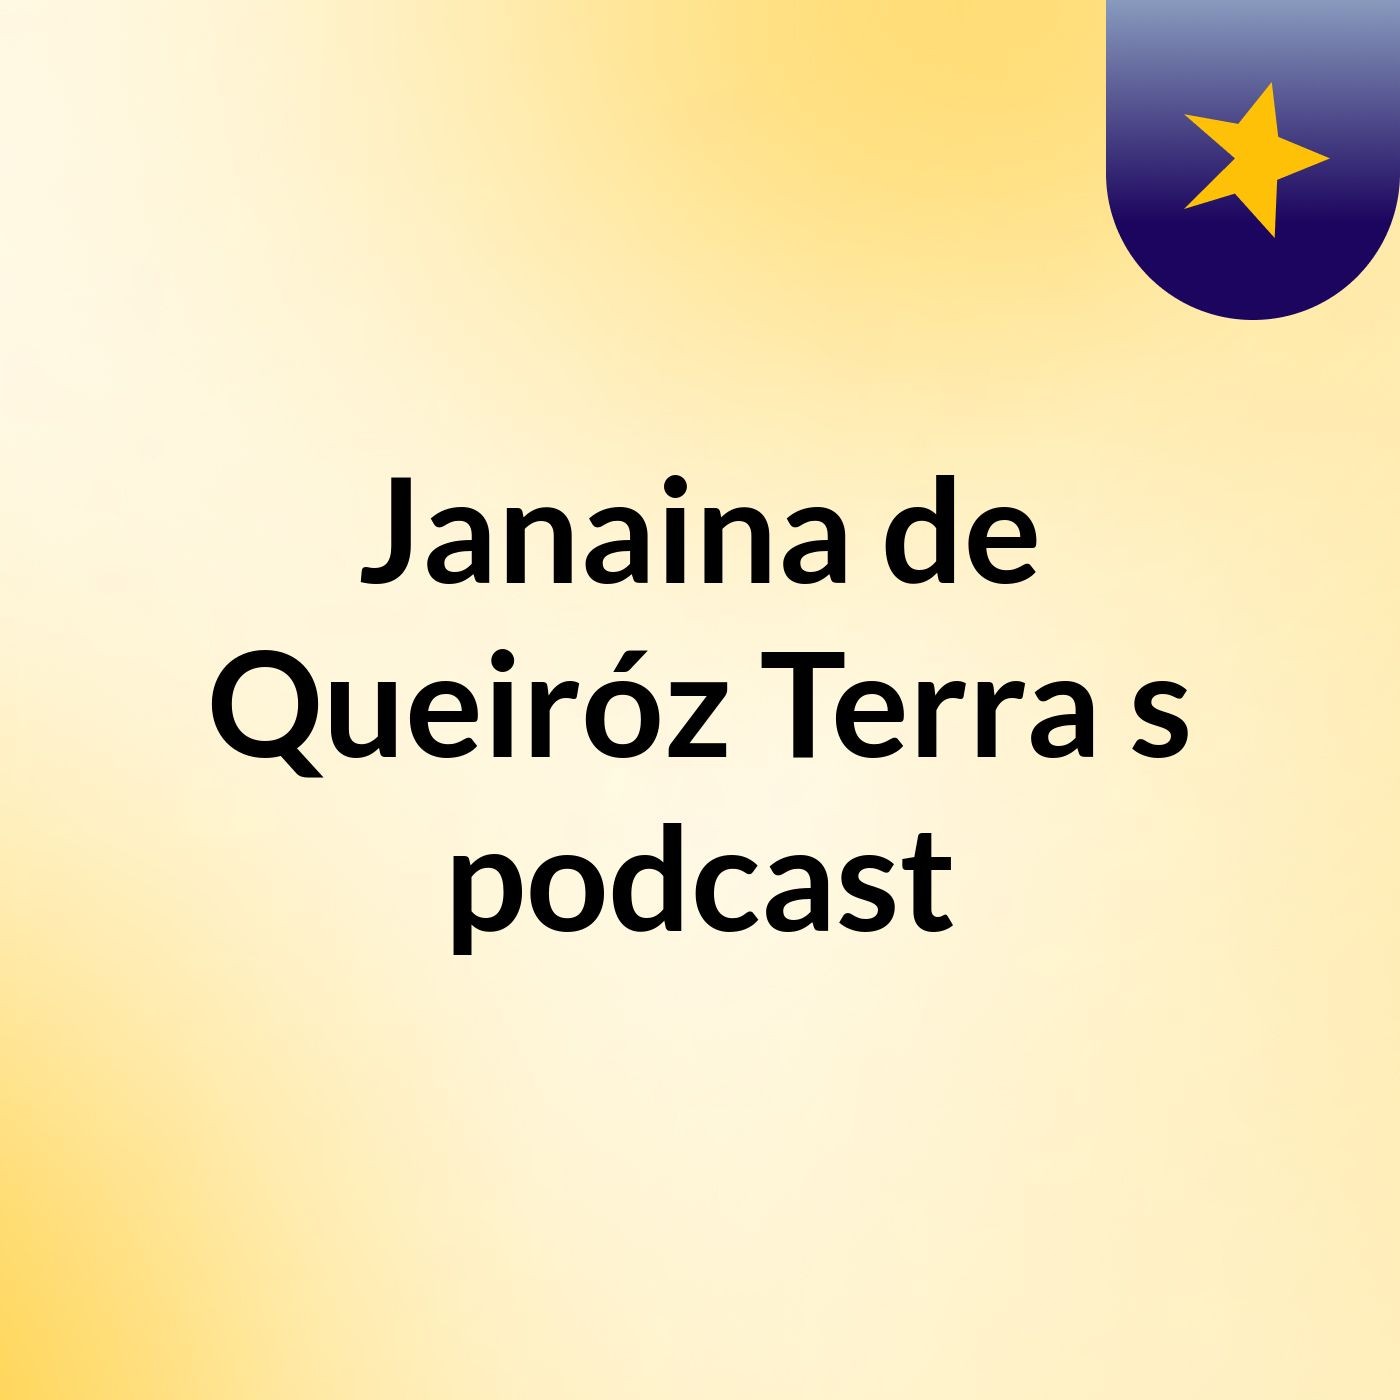 Janaina de Queiróz Terra's podcast